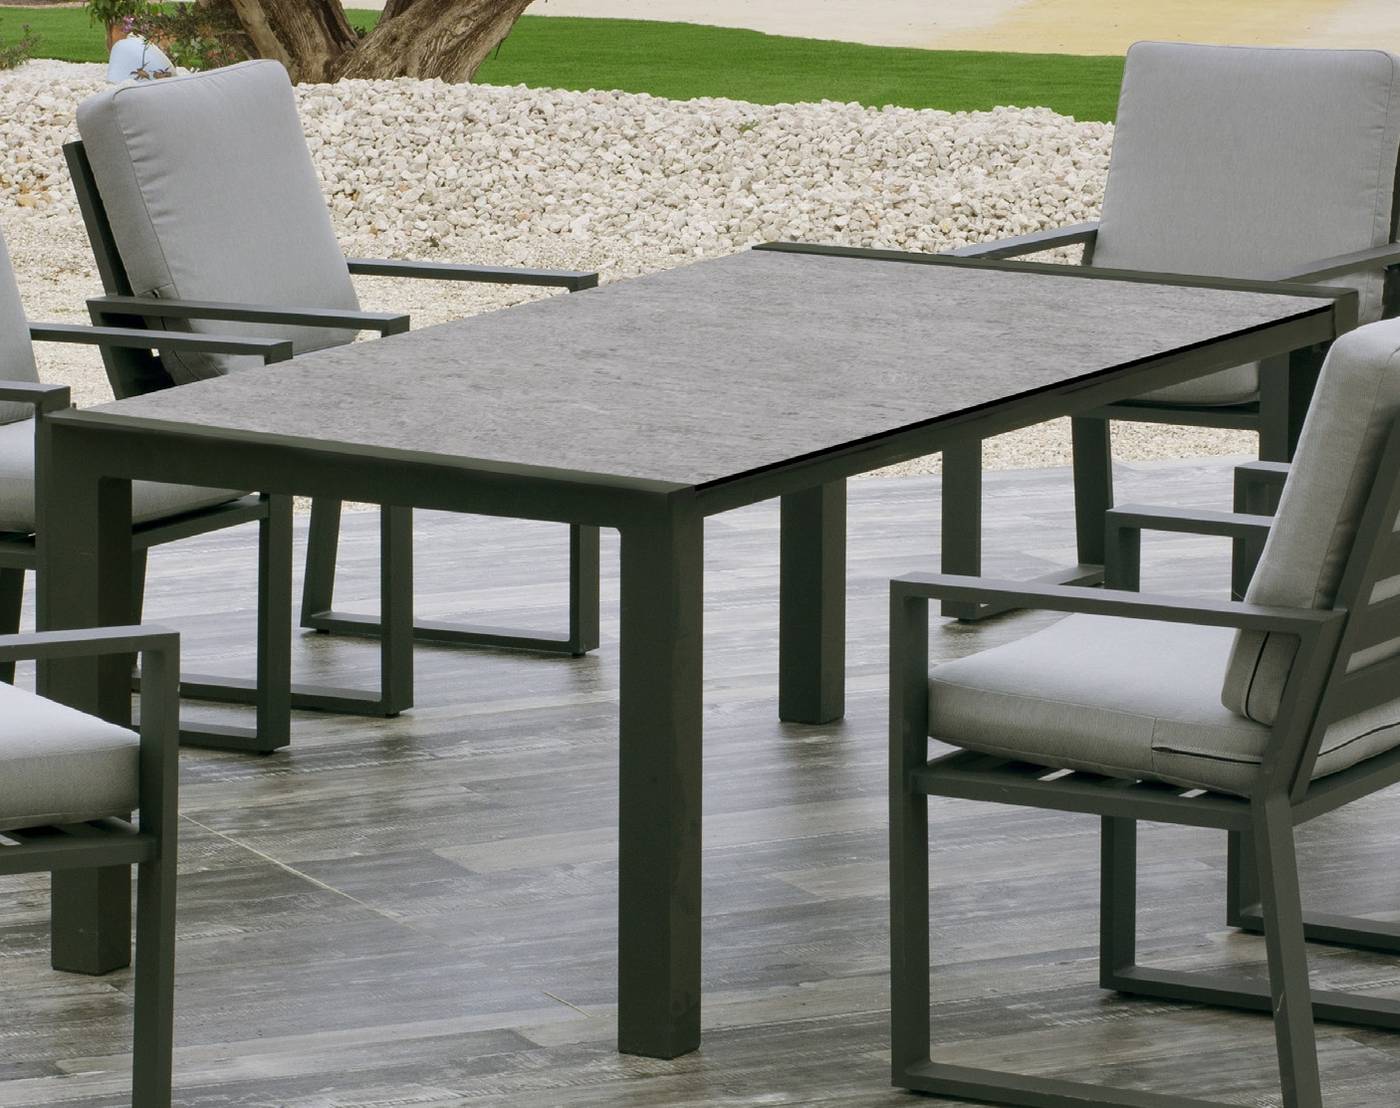 Mesa de aluminio rectangular de 160 cm. Tablero de piedra sinterizada de alta calidad. Disponible en varios colores.